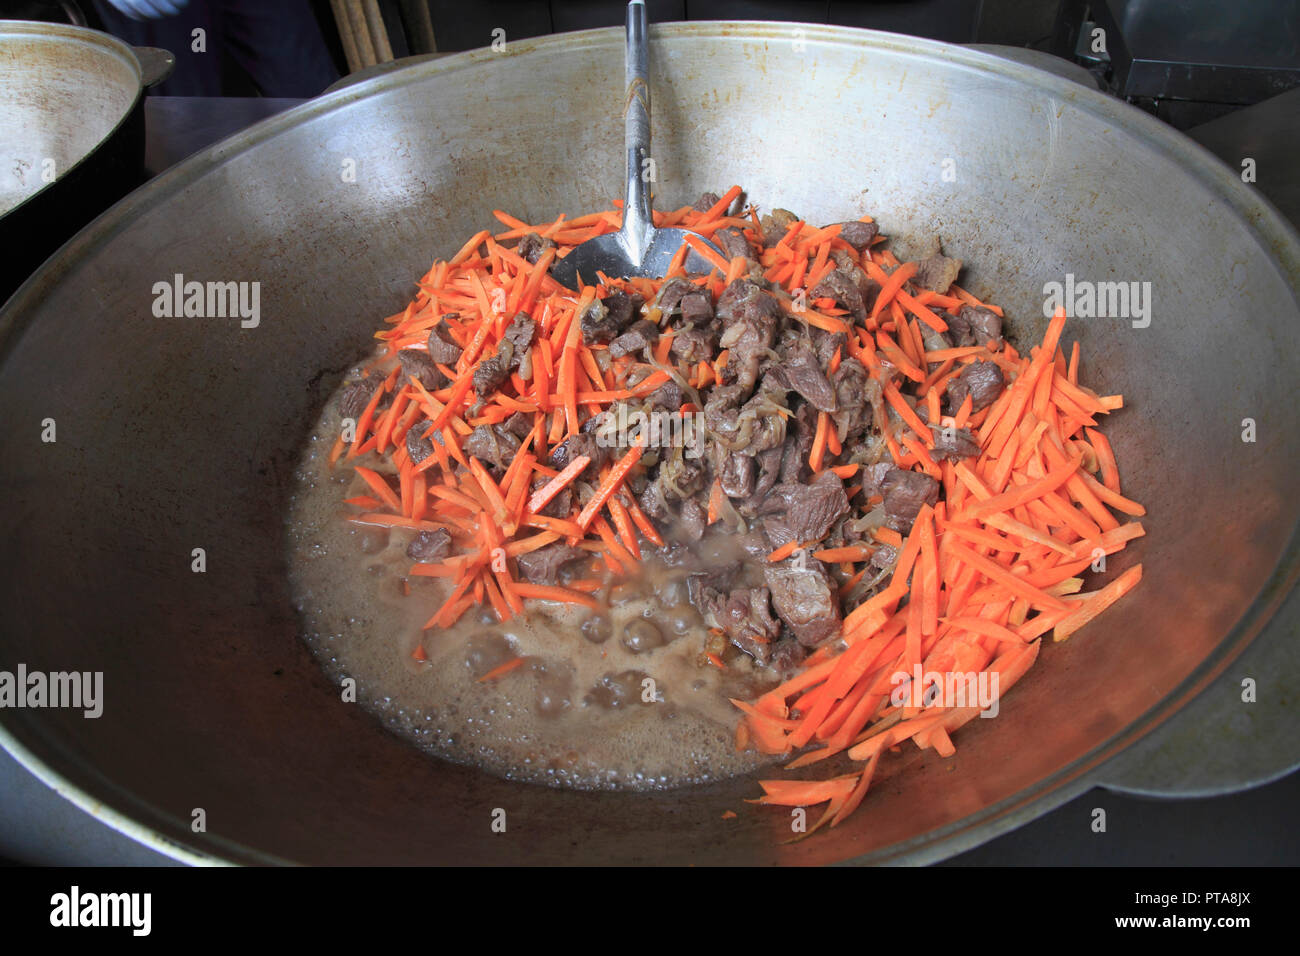 Kasachstan, Almaty, lokale Gericht mit Fleisch, Karotten, Stockfoto